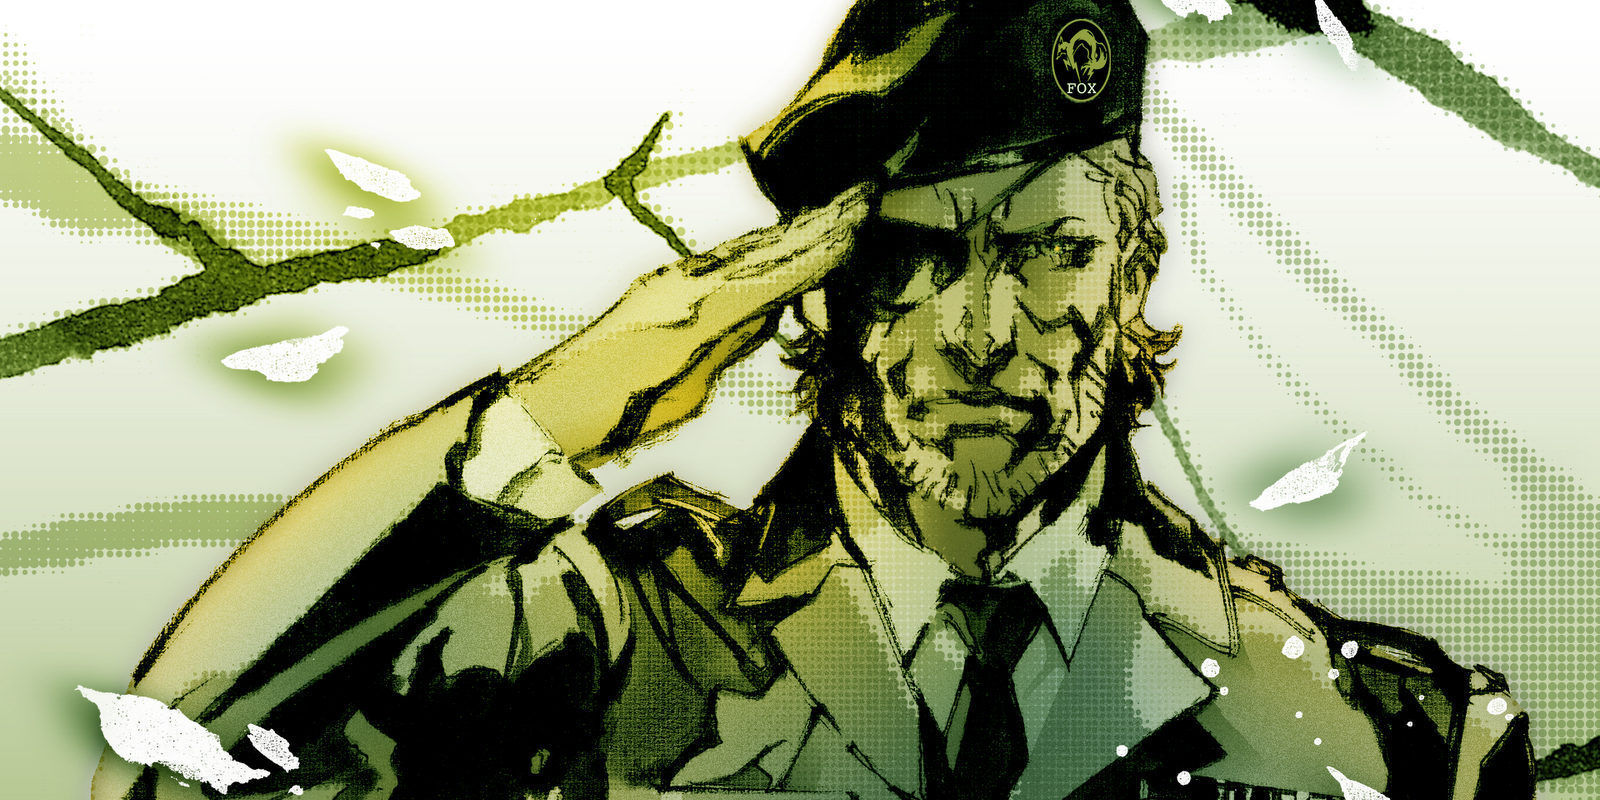 'Metal Gear' celebra su 30º aniversario... ¡FELICIDADES!